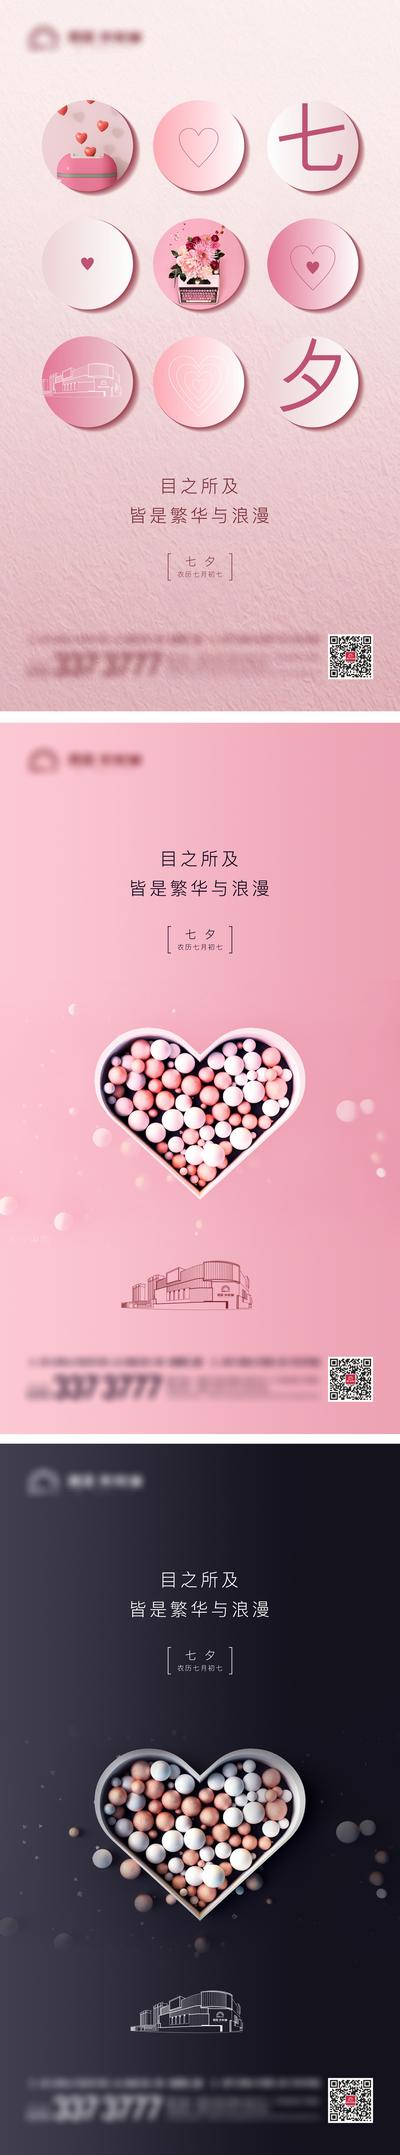 南门网 海报 中国传统节日 七夕 情人节 浪漫 爱心 糖